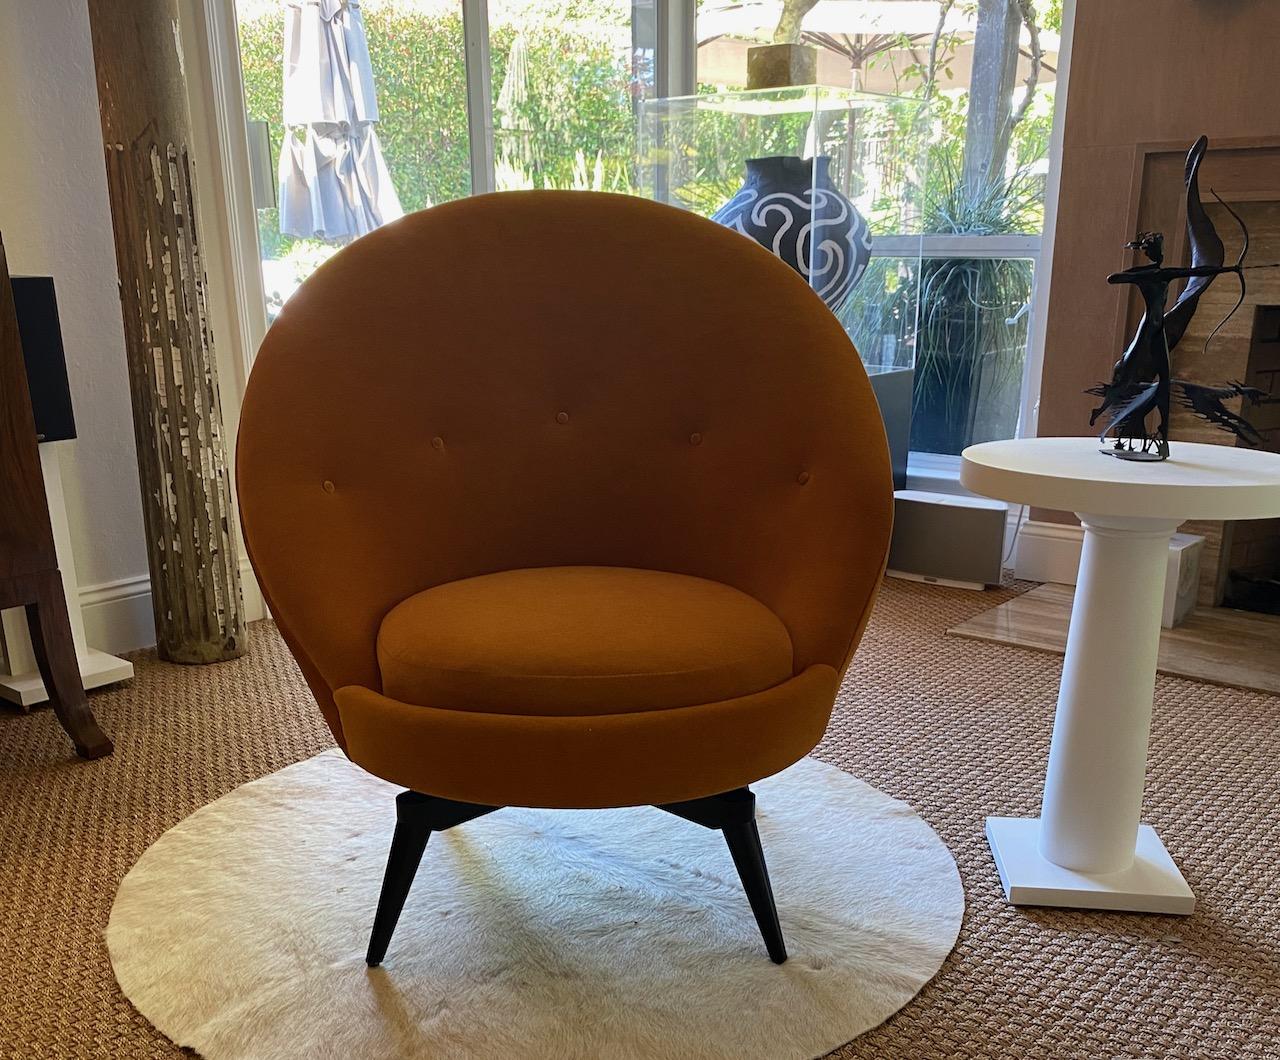 Fauteuil oeuf pivotant dans le style Midcentury français. Cette chaise sophistiquée est garnie d'un luxueux Mohair tricoté Orange/Ocre à dos de mousseline. Ce modèle très élégant et polyvalent est aussi confortable qu'il en a l'air. Il a été